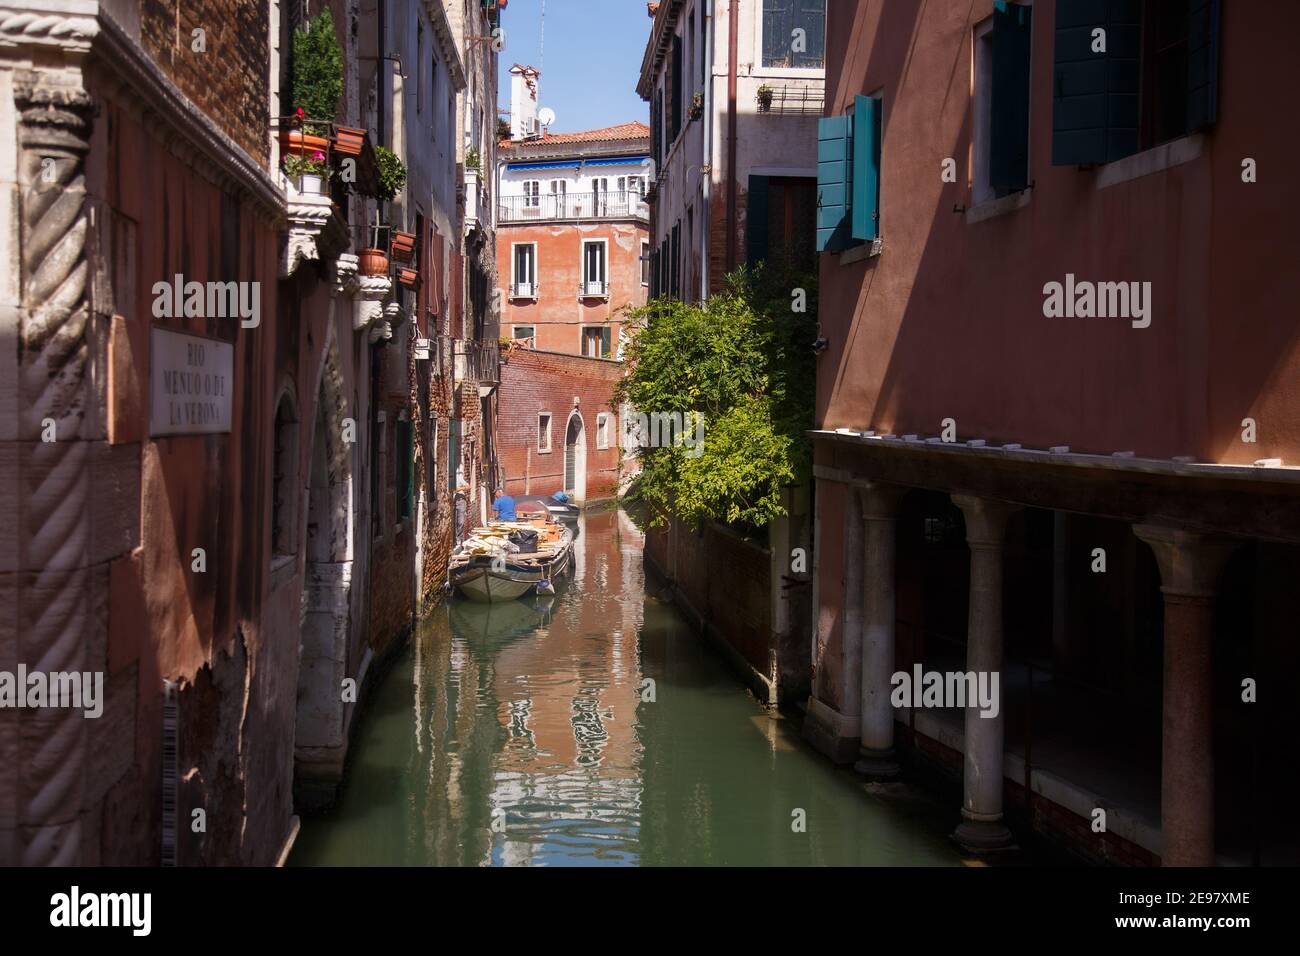 Venise, Italie - septembre 2020 : canaux confortables de Venise, ville sur l'eau Banque D'Images